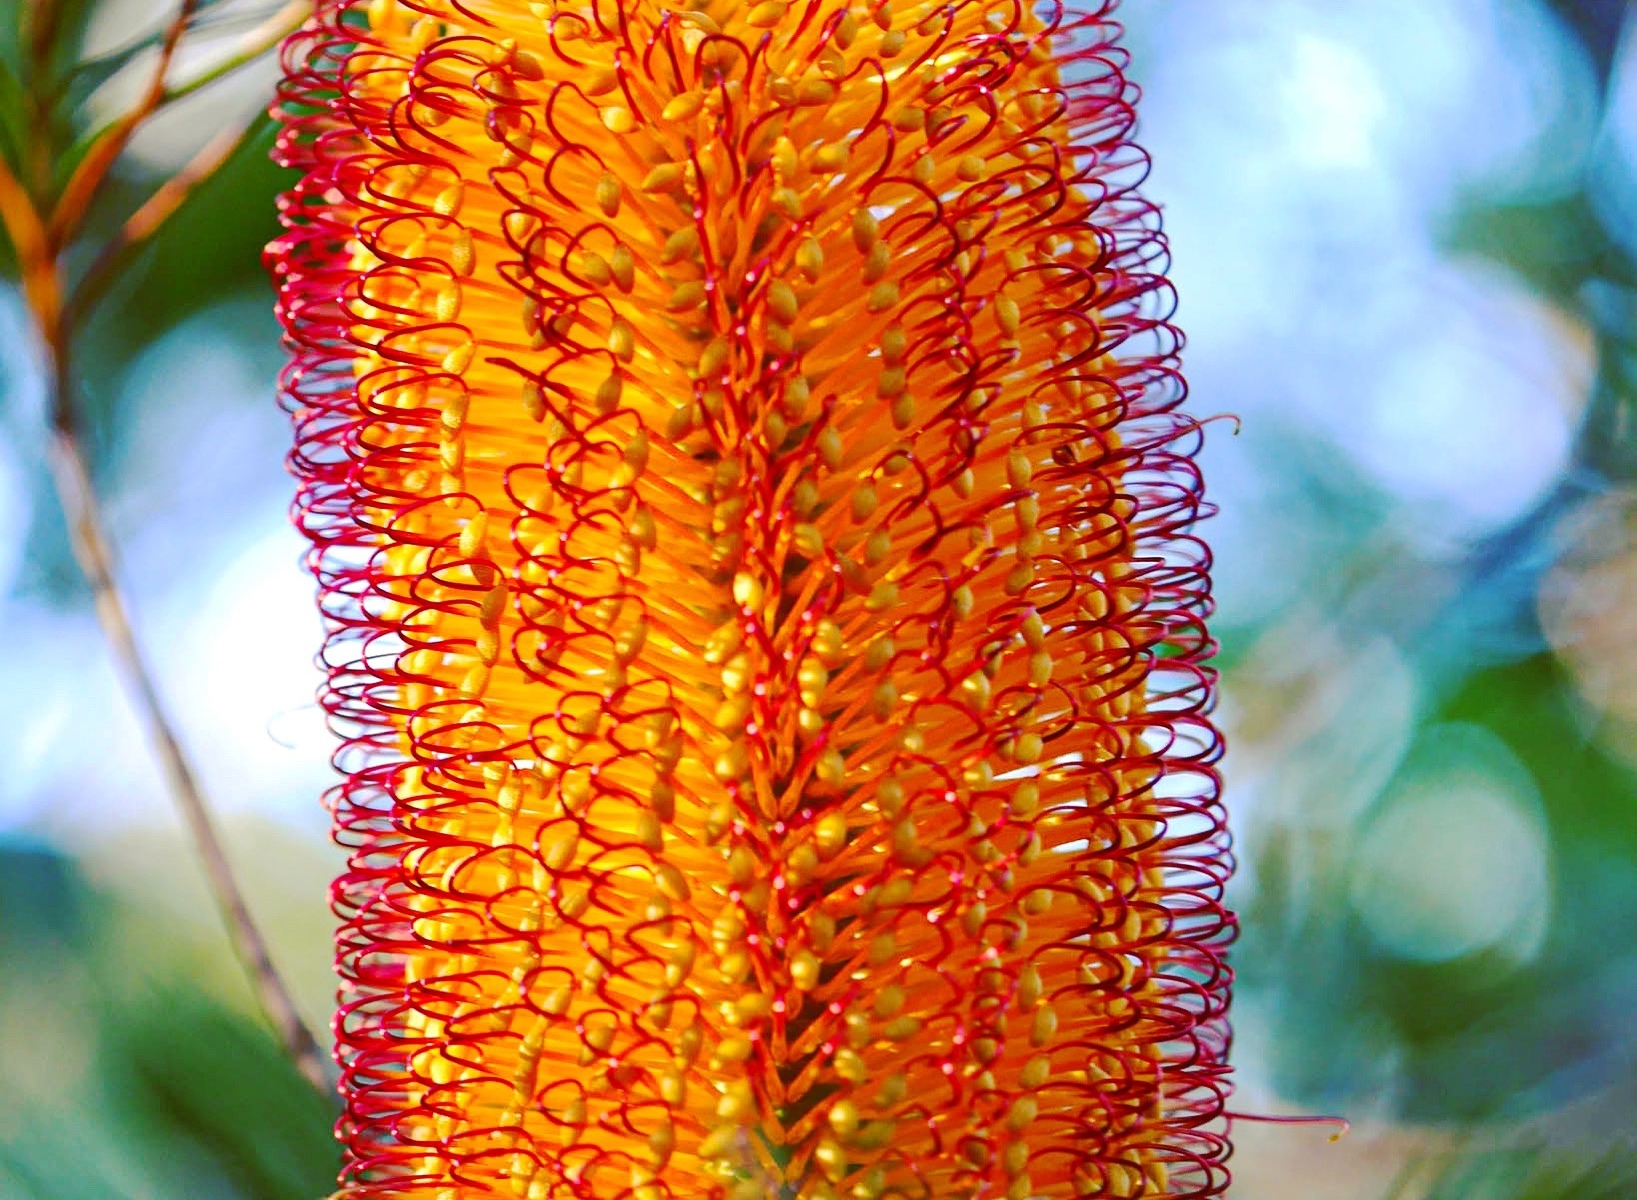 Banksia flower - Australian native